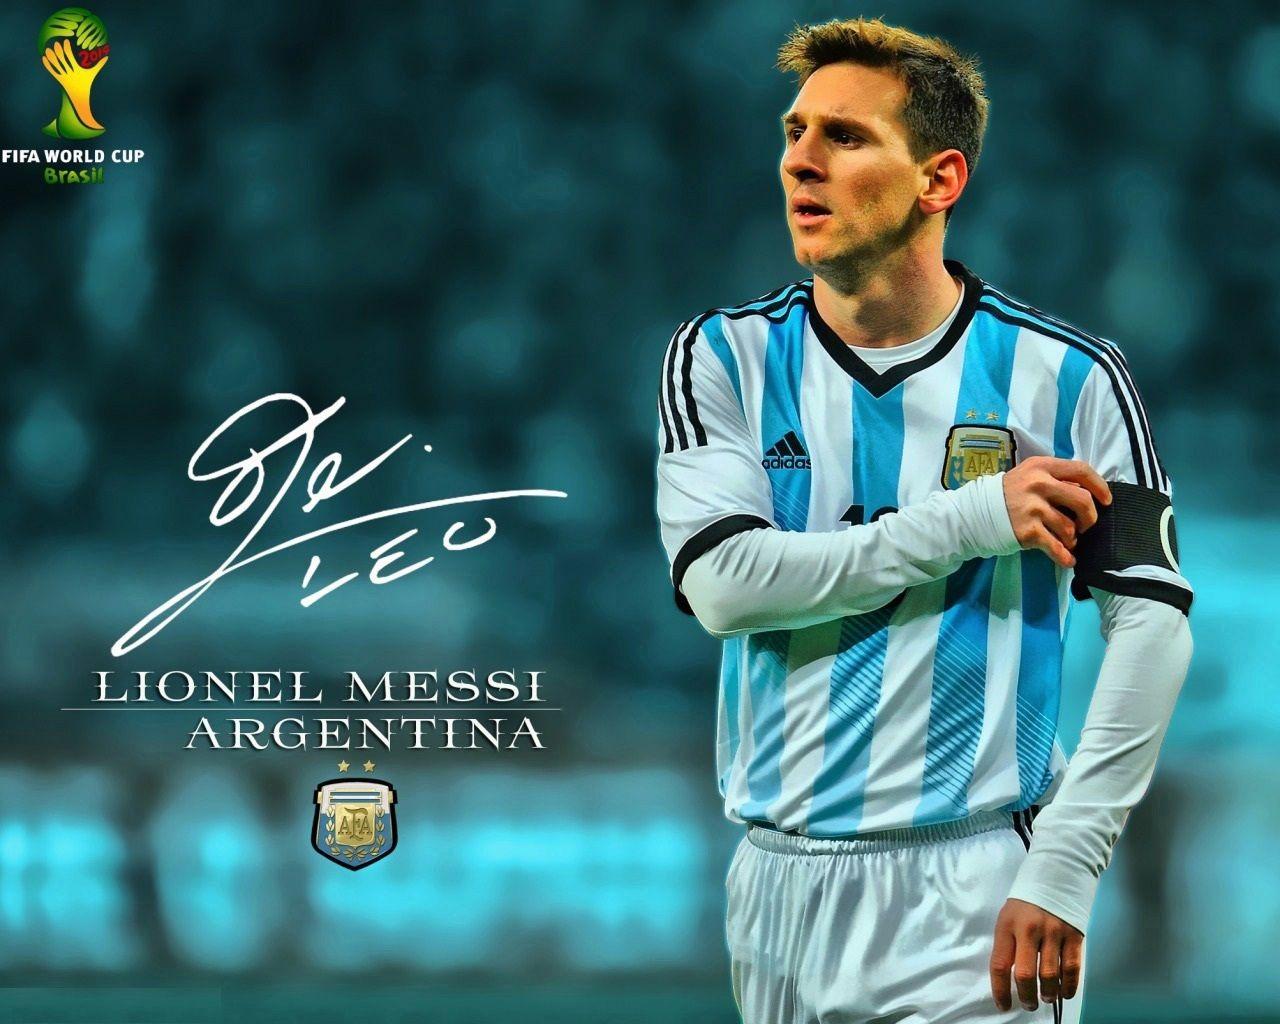 Argentina Football Team Wallpaper Argentina Football Wallpaper